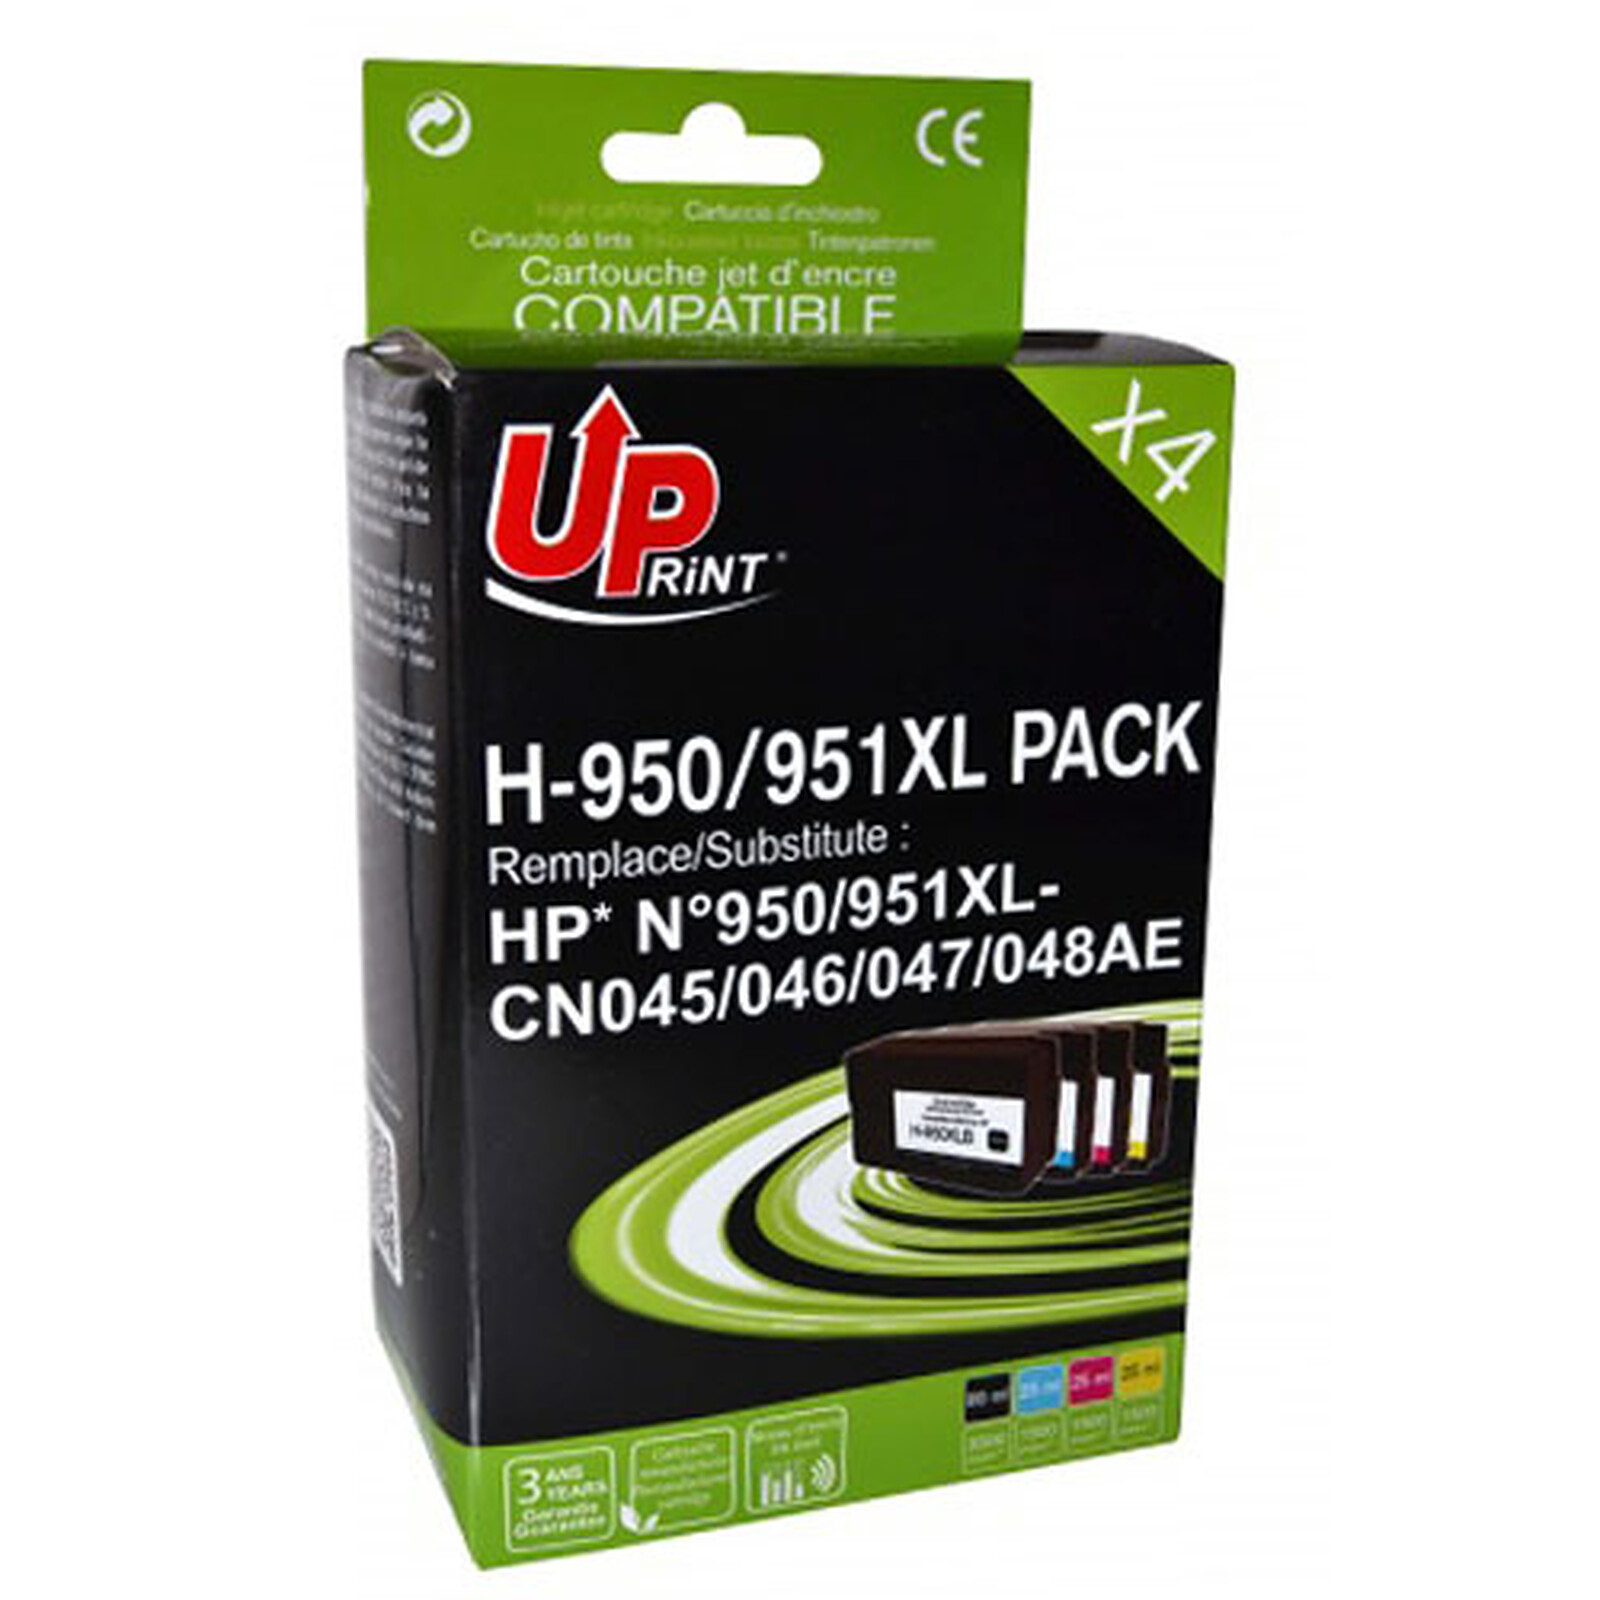 Uprint 912XL, Pack de 4 cartouches d'encre Uprint compatible HP 912XL (912XL)  Noir et Couleur.